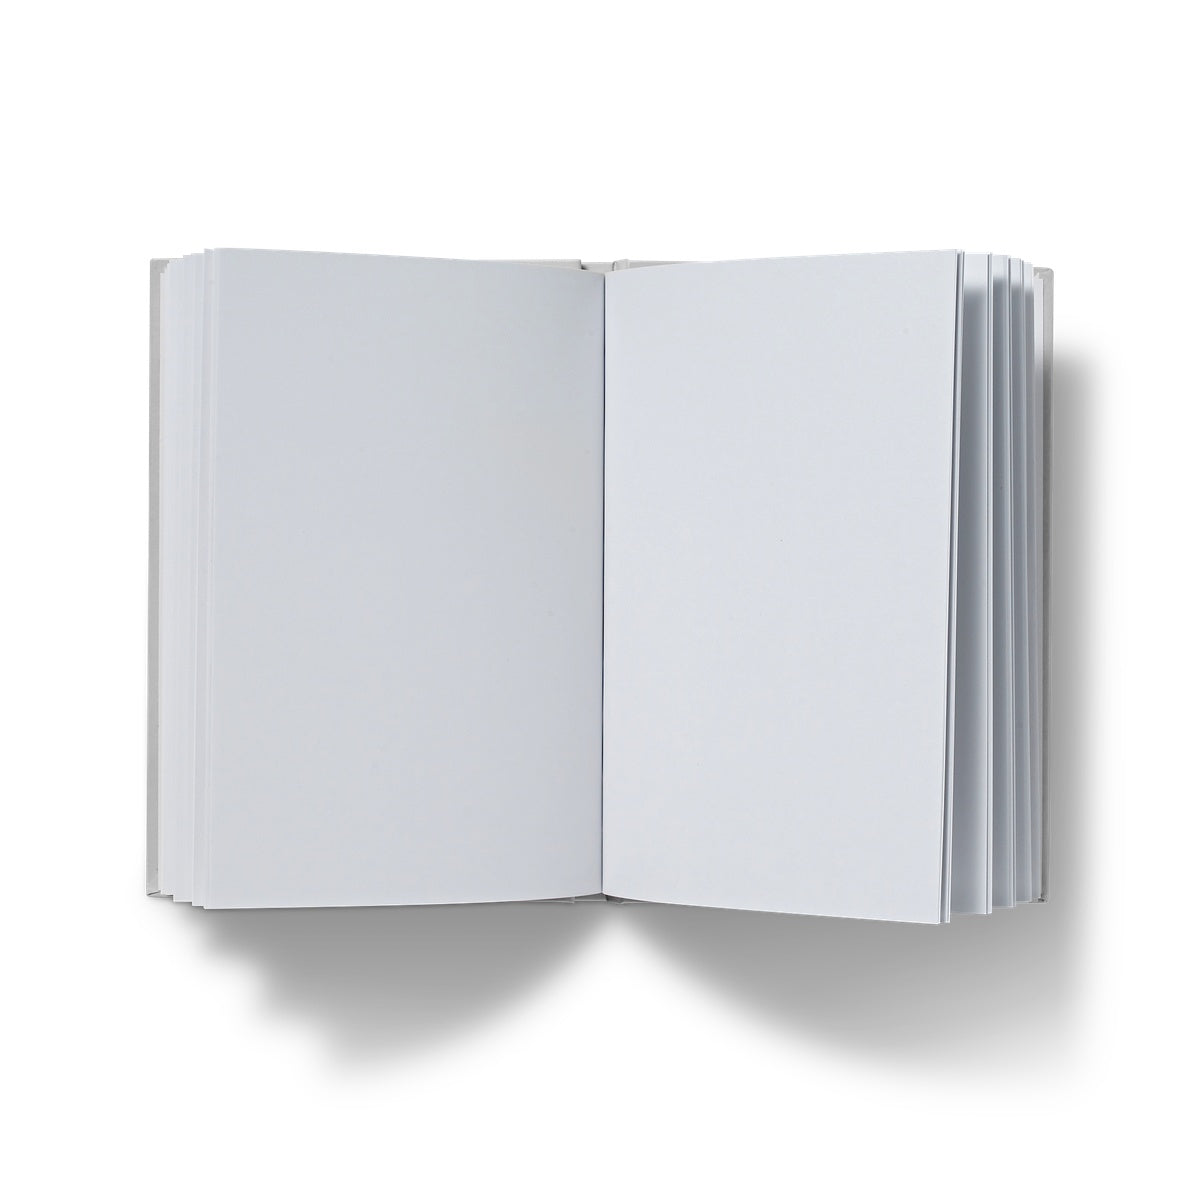 A to Z Hardback Journal / Notebook